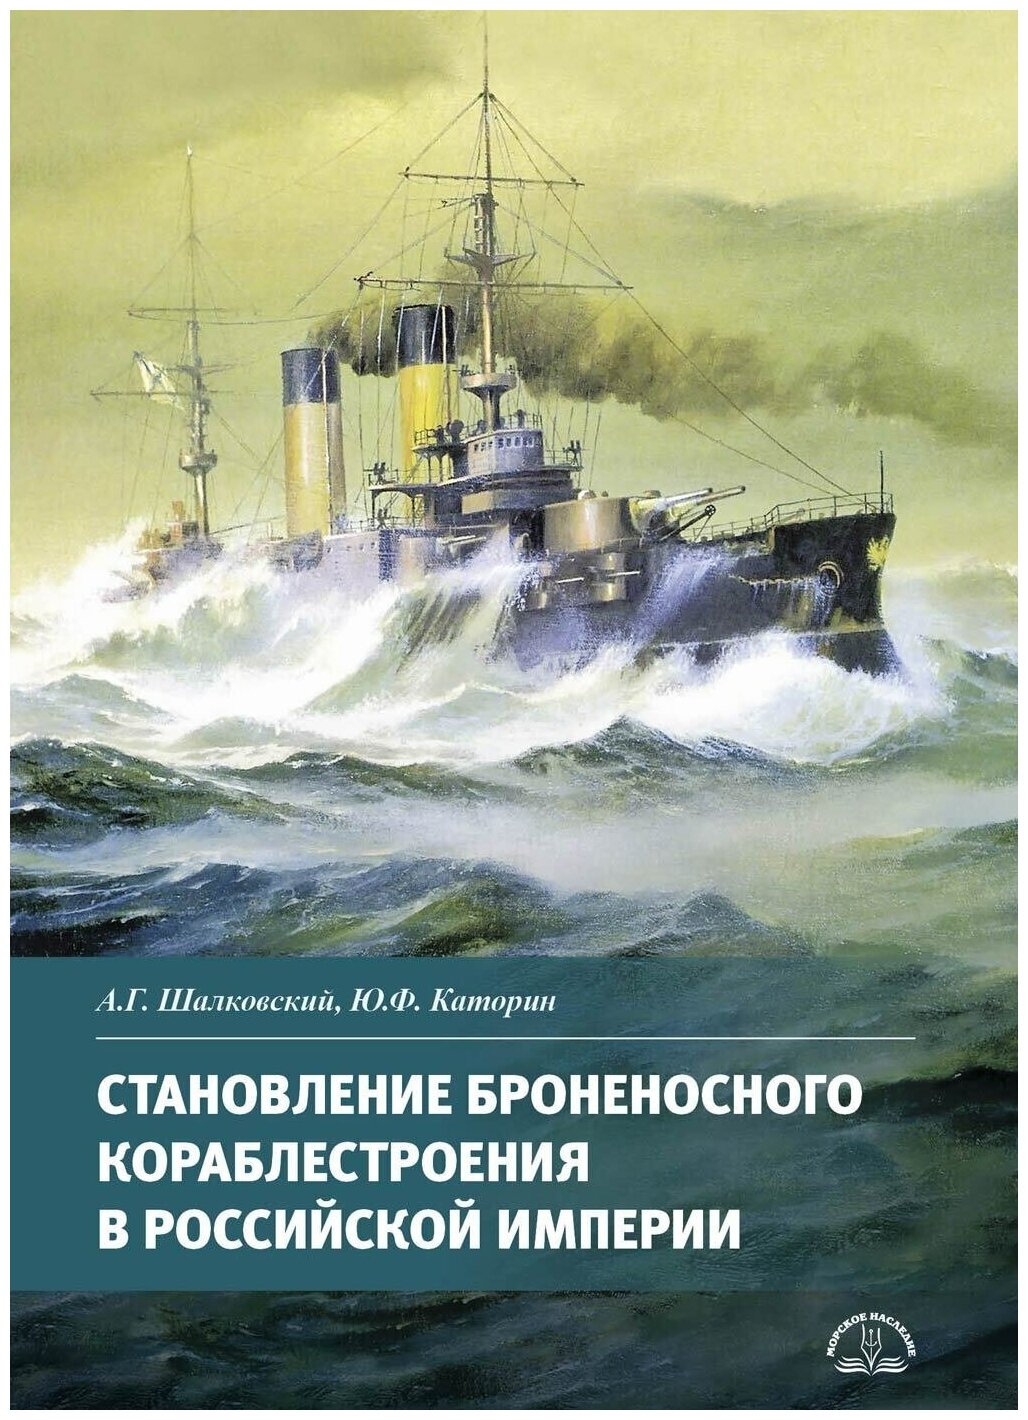 Становление броненосного кораблестроения в Российской Империи - фото №1